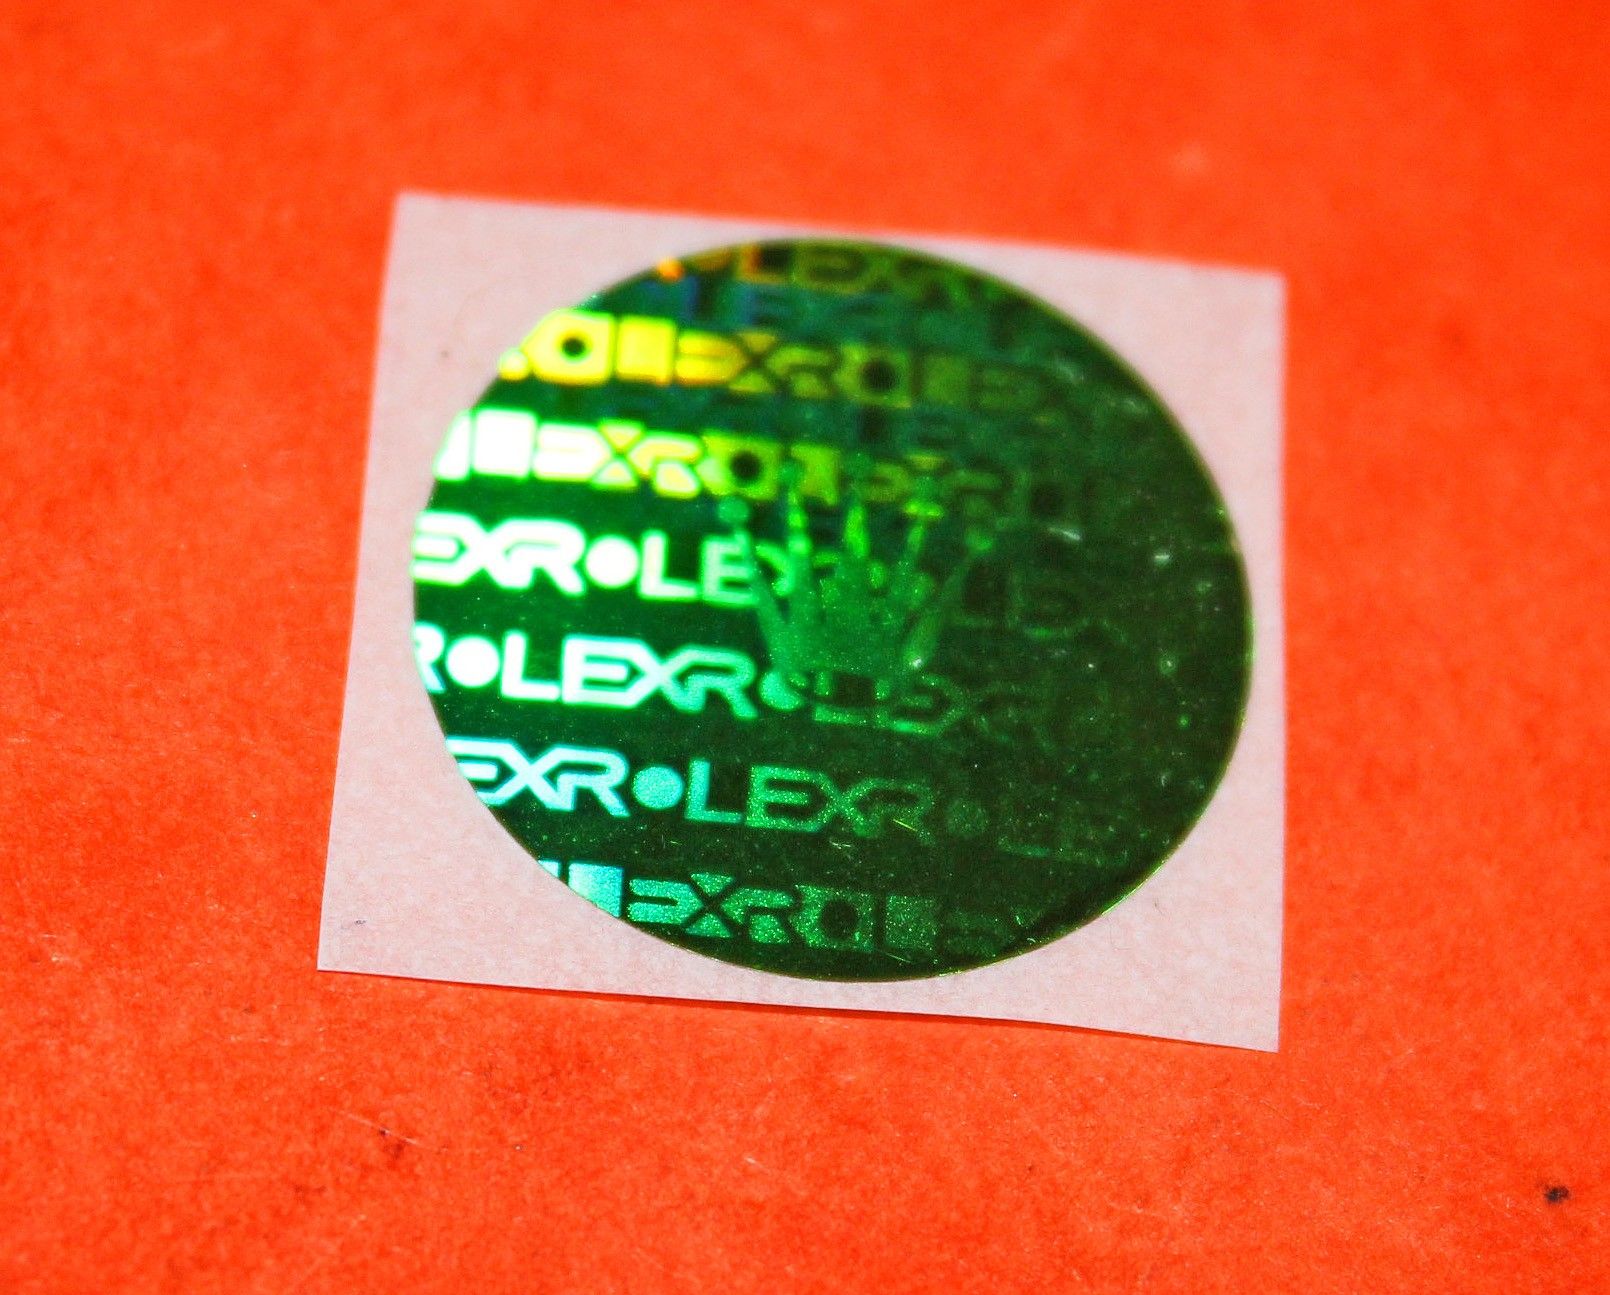 Rolex Watch caseback Hologram Sticker Decal, green Submariner, GMT, Explorer, Daytona 16610, 116520, 16710,16570, 14270, 14060